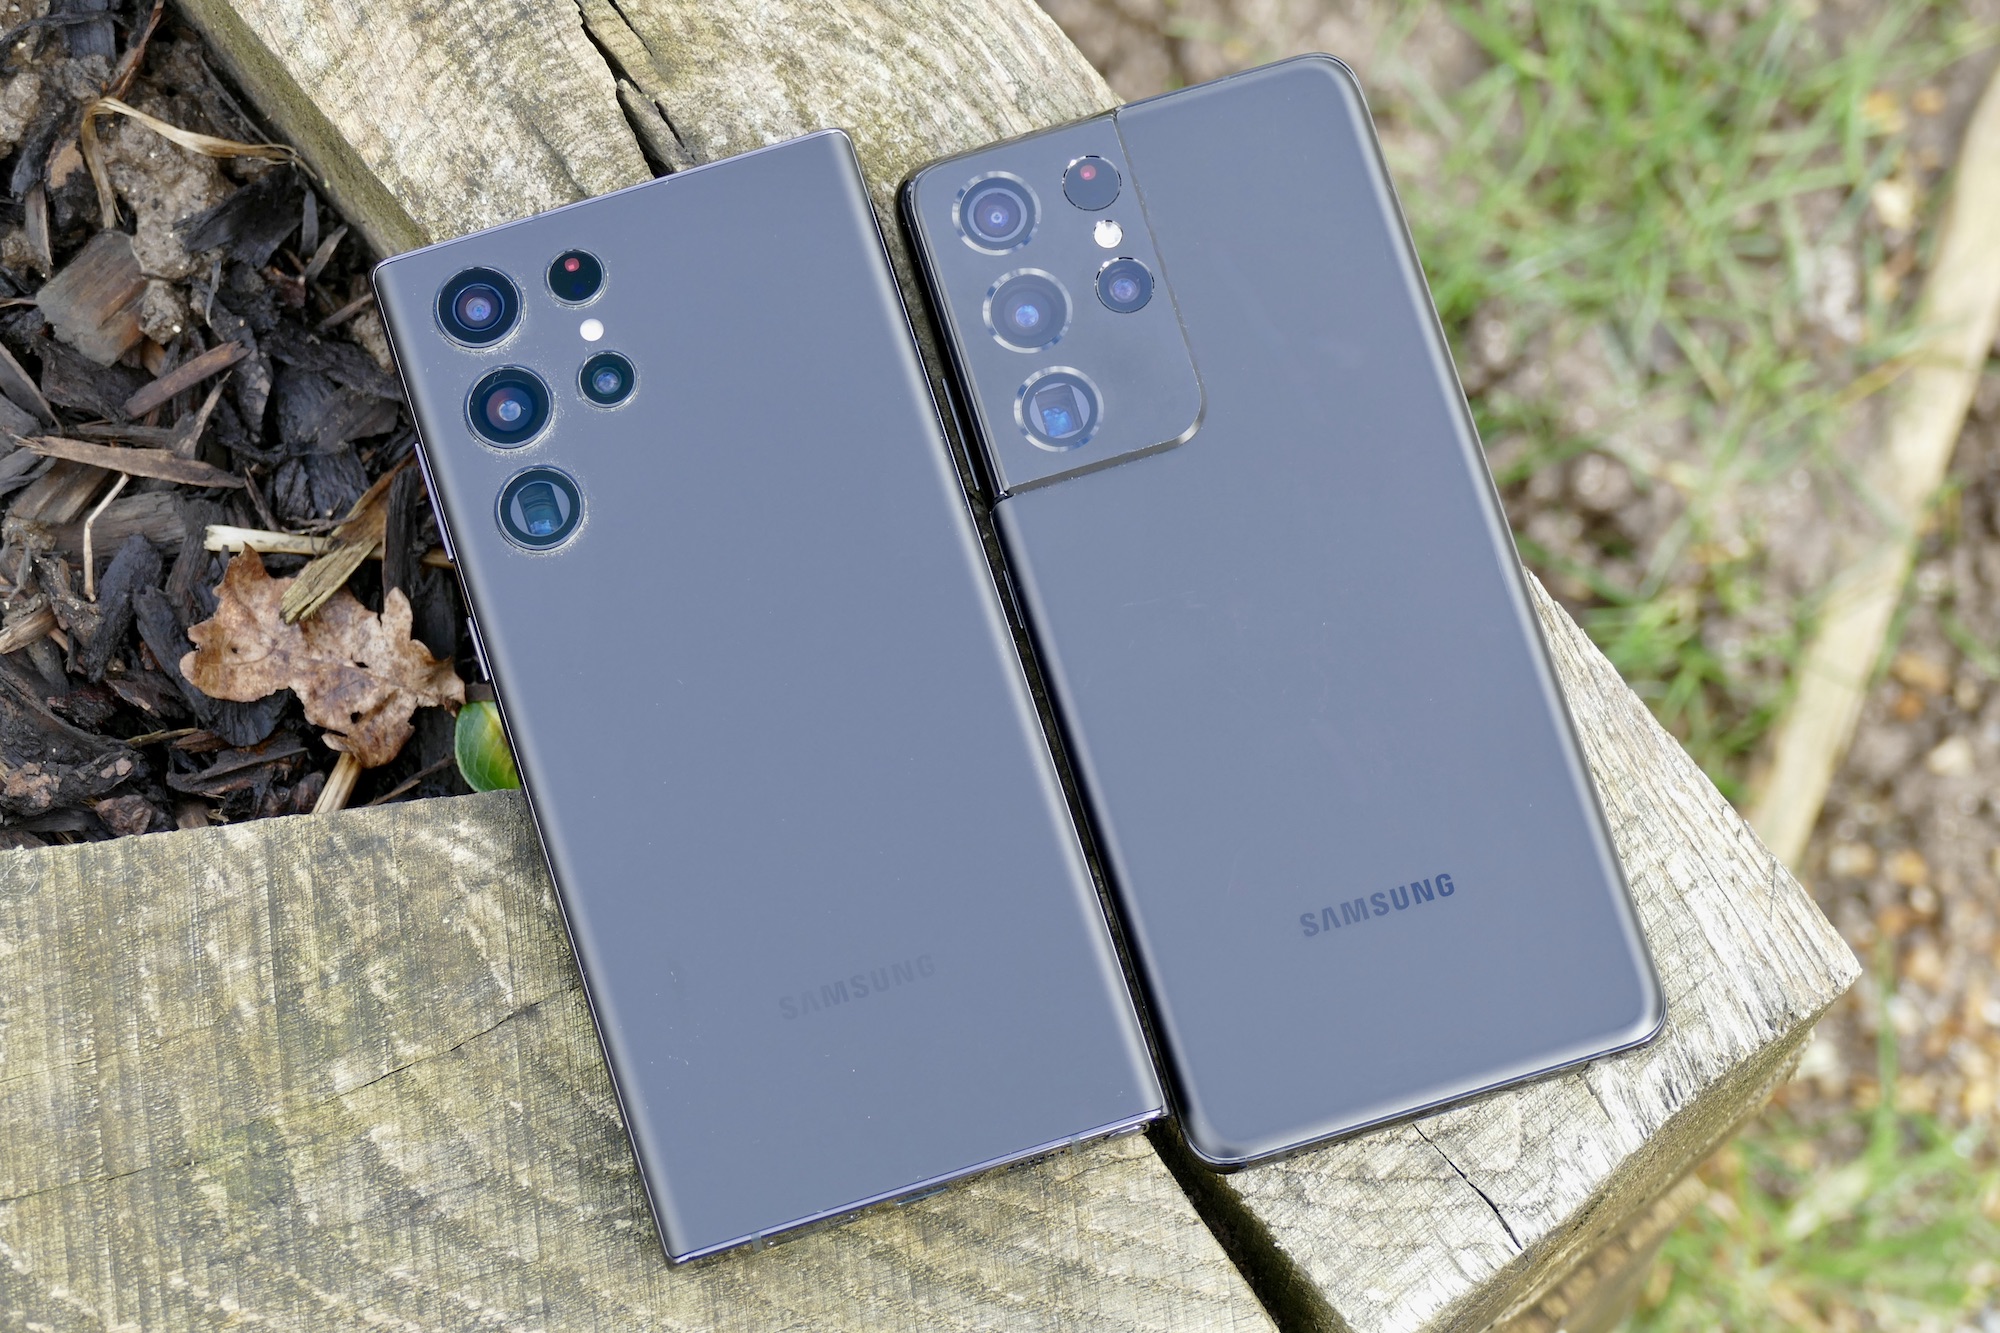 Bạn yêu thích chụp ảnh và muốn có một chiếc điện thoại thông minh với camera chất lượng tốt nhất? Hãy xem hình ảnh liên quan đến Galaxy S22 Ultra để thưởng thức khả năng chụp ảnh vô cùng ấn tượng của sản phẩm này.